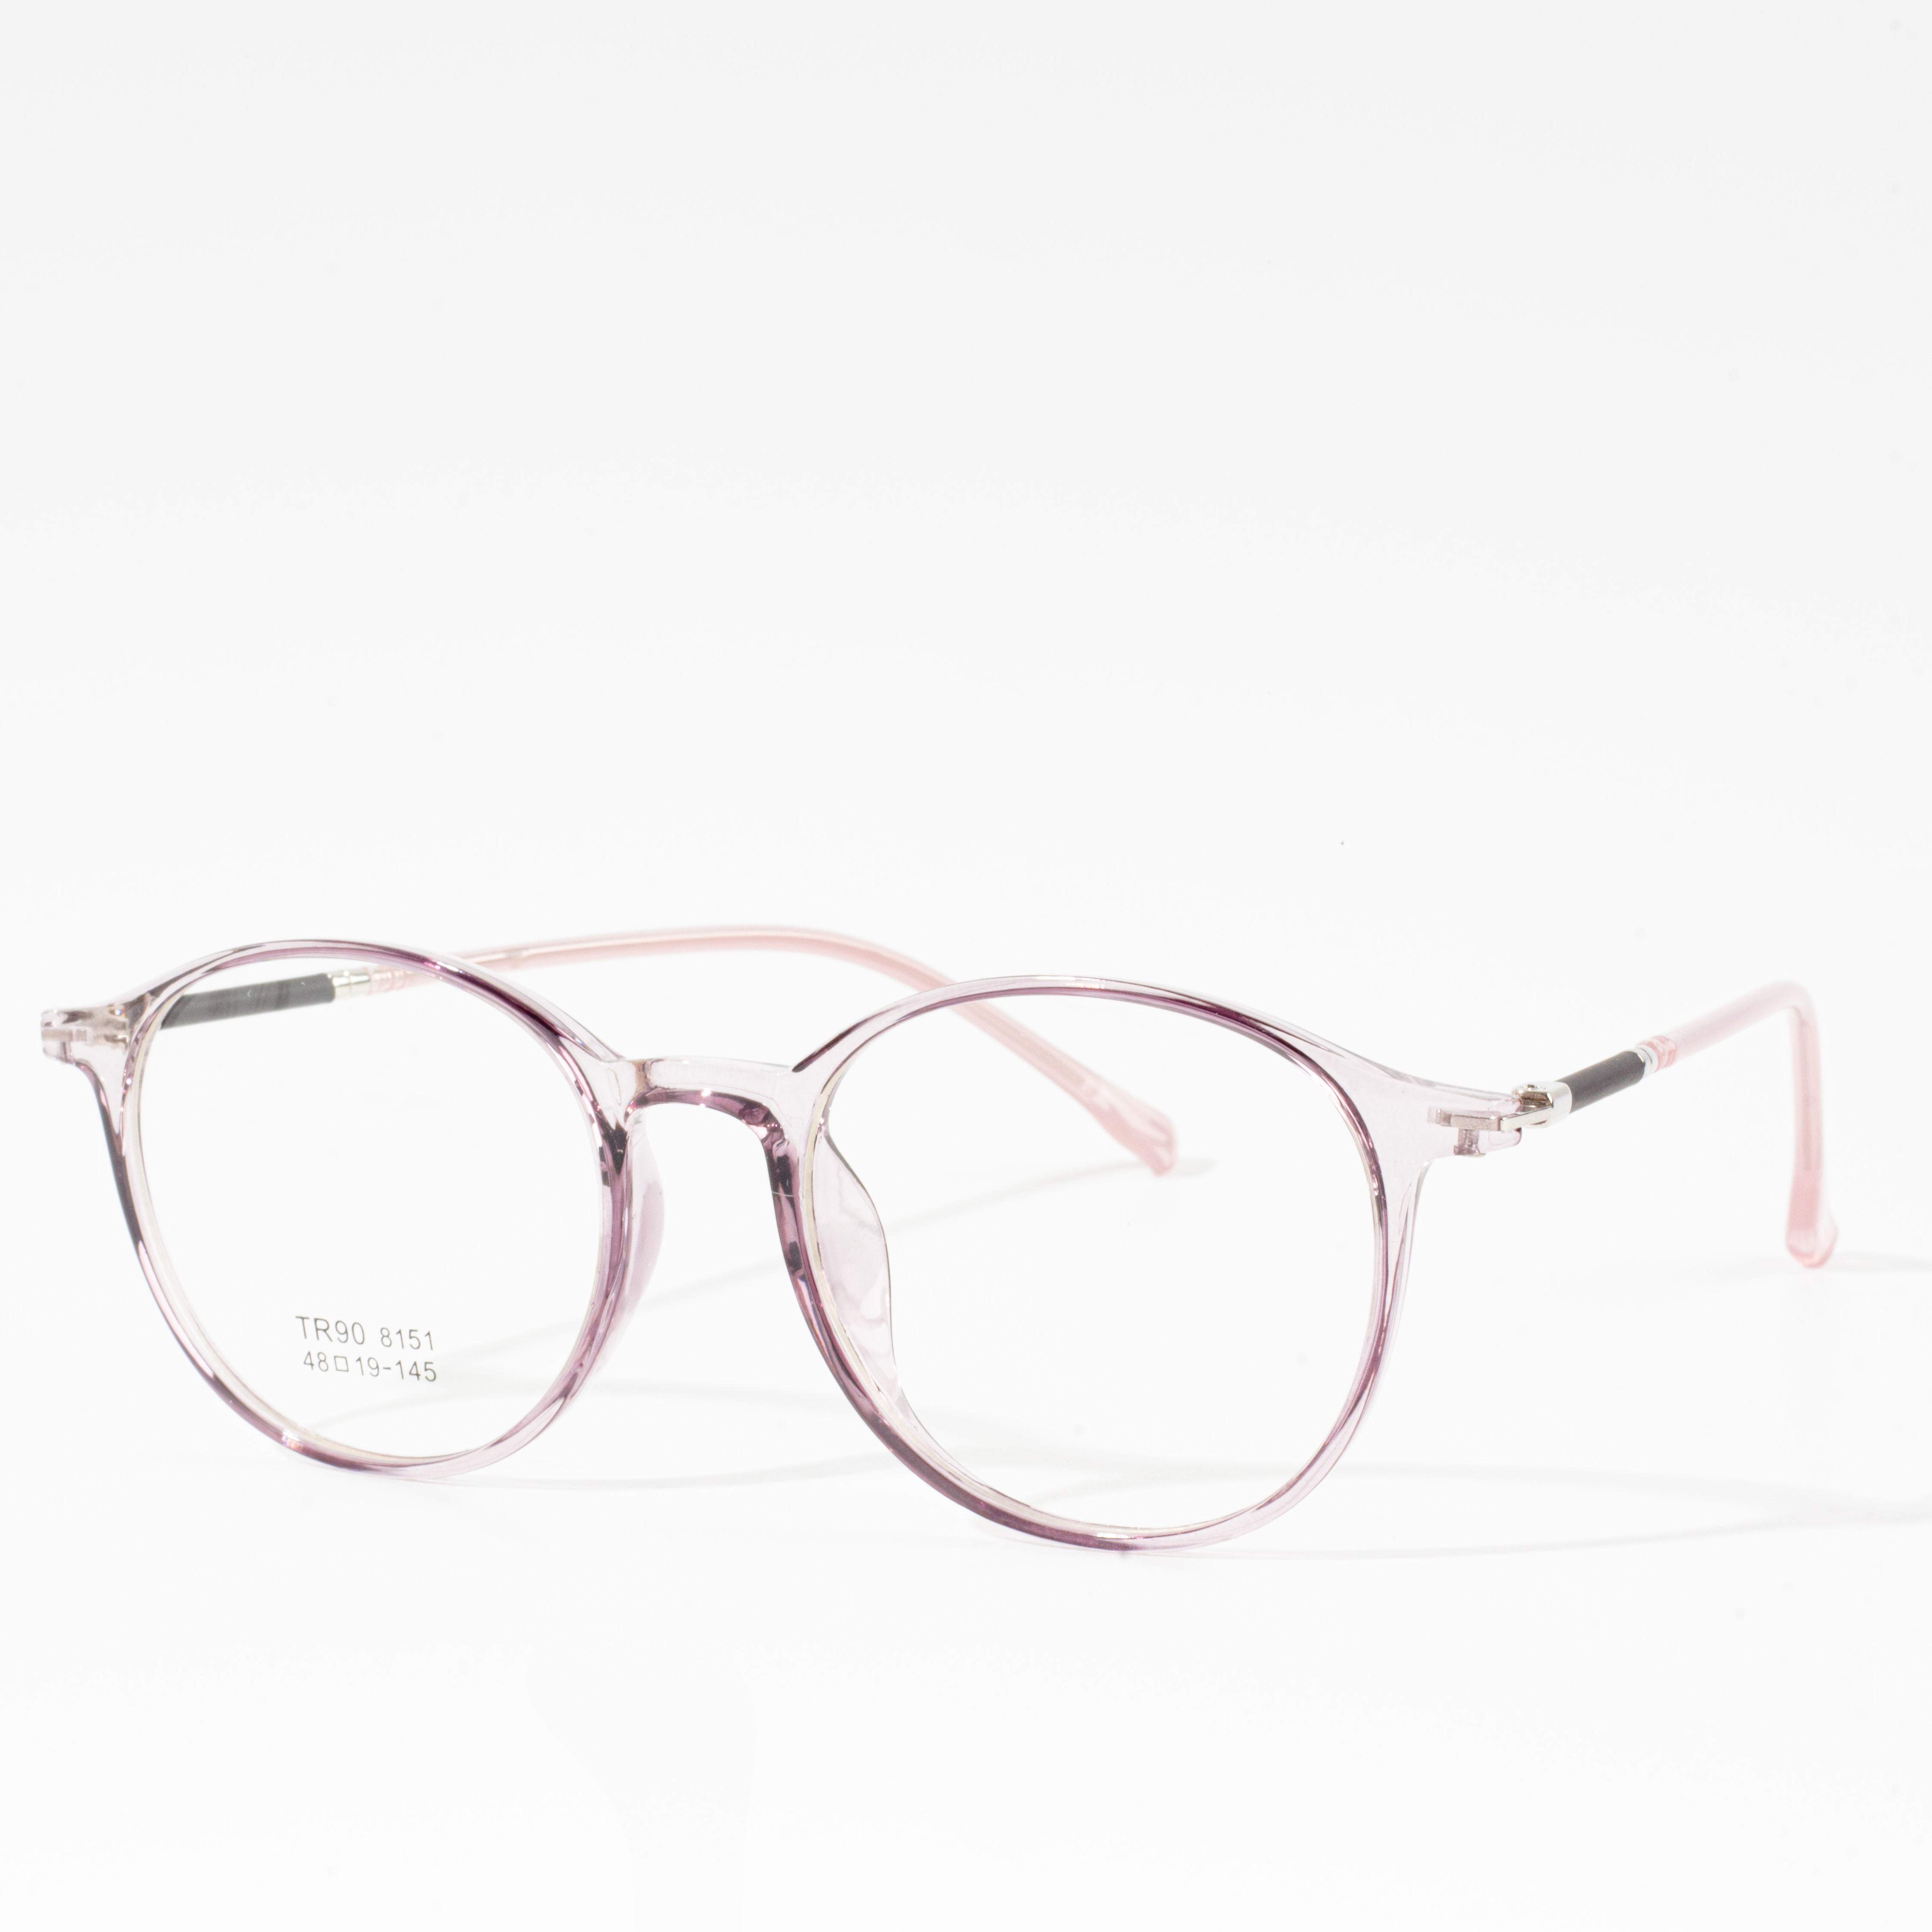 Mens & Women Designer Frames - Eyeglasses.com 广告· https://www.eyeglasses.com/ (888) 896-3885 Shop Designer Frames from Top Global Eyeglass Brands Pou mwatye nan pri Yo Vann an Detay jodi a.